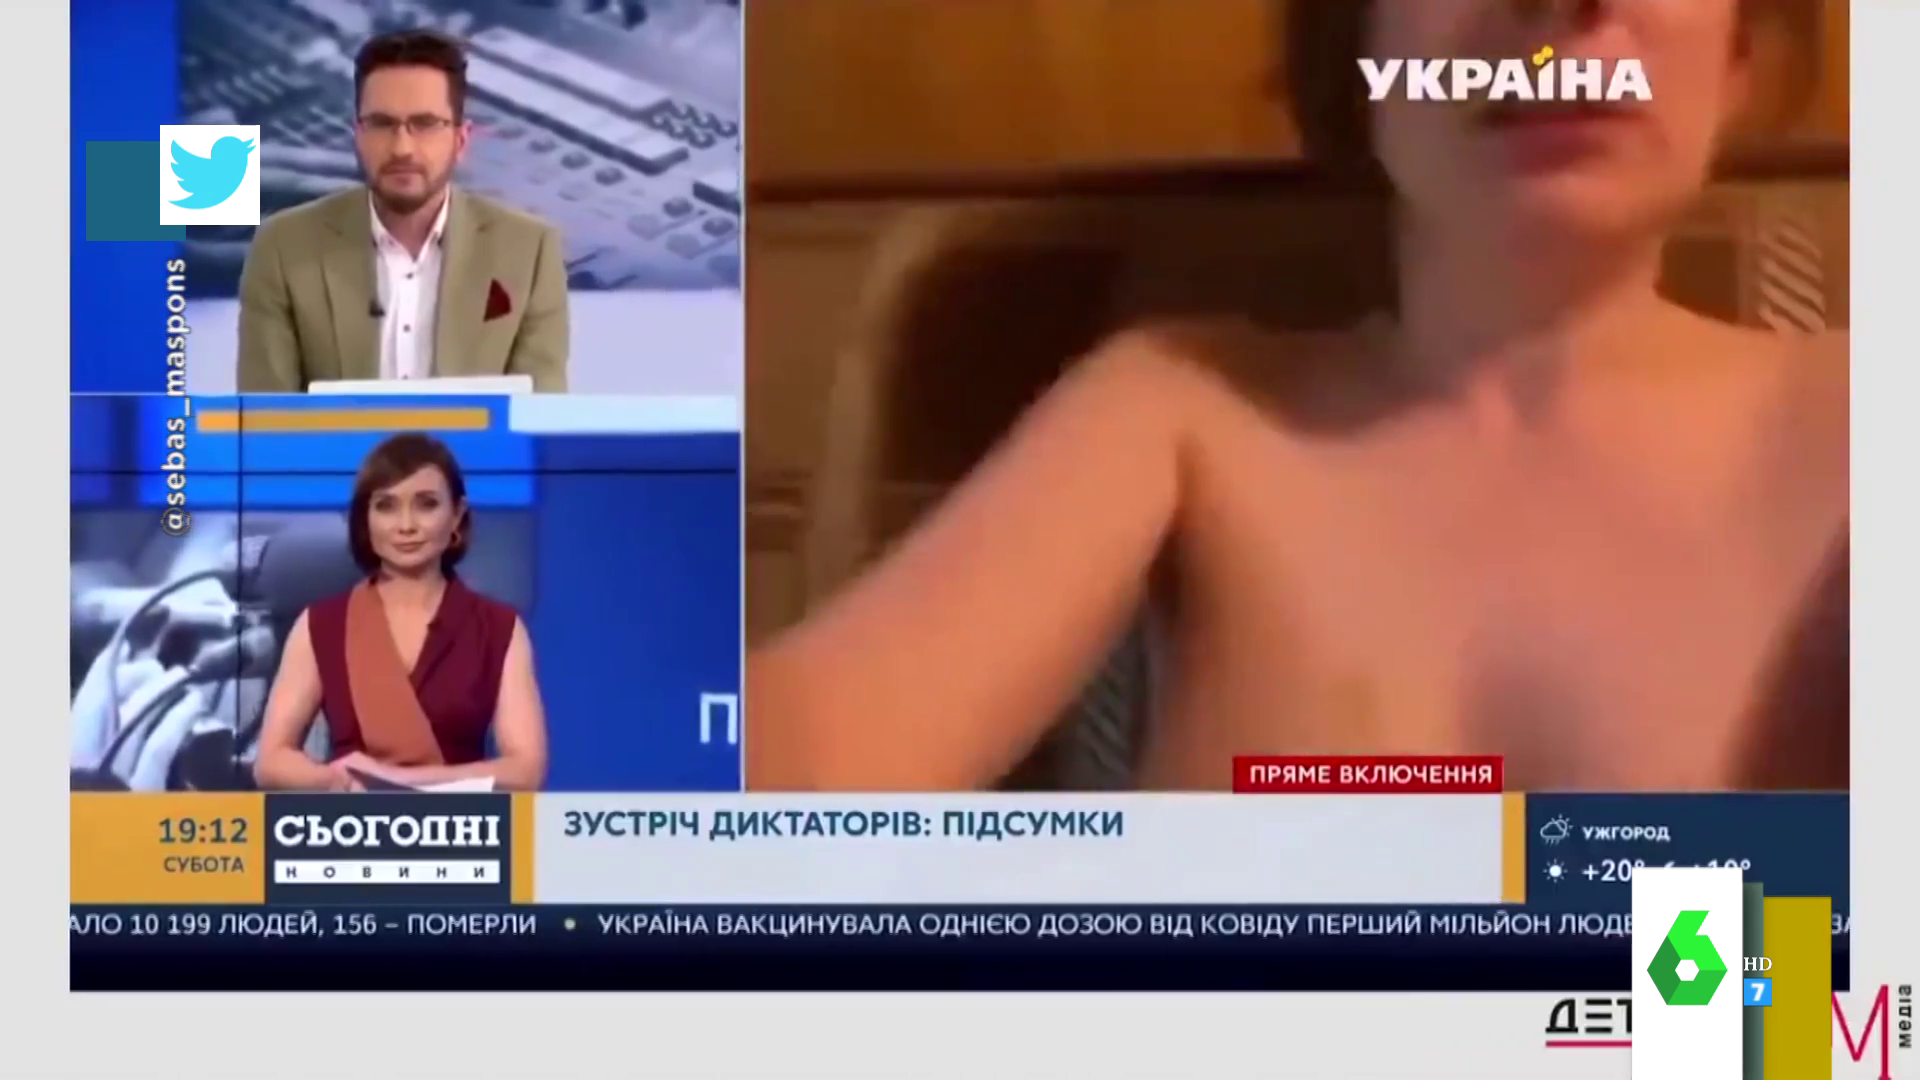 El inesperado momento en el que sale una mujer desnuda en una videollamada  de televisión: así son las reacciones en directo